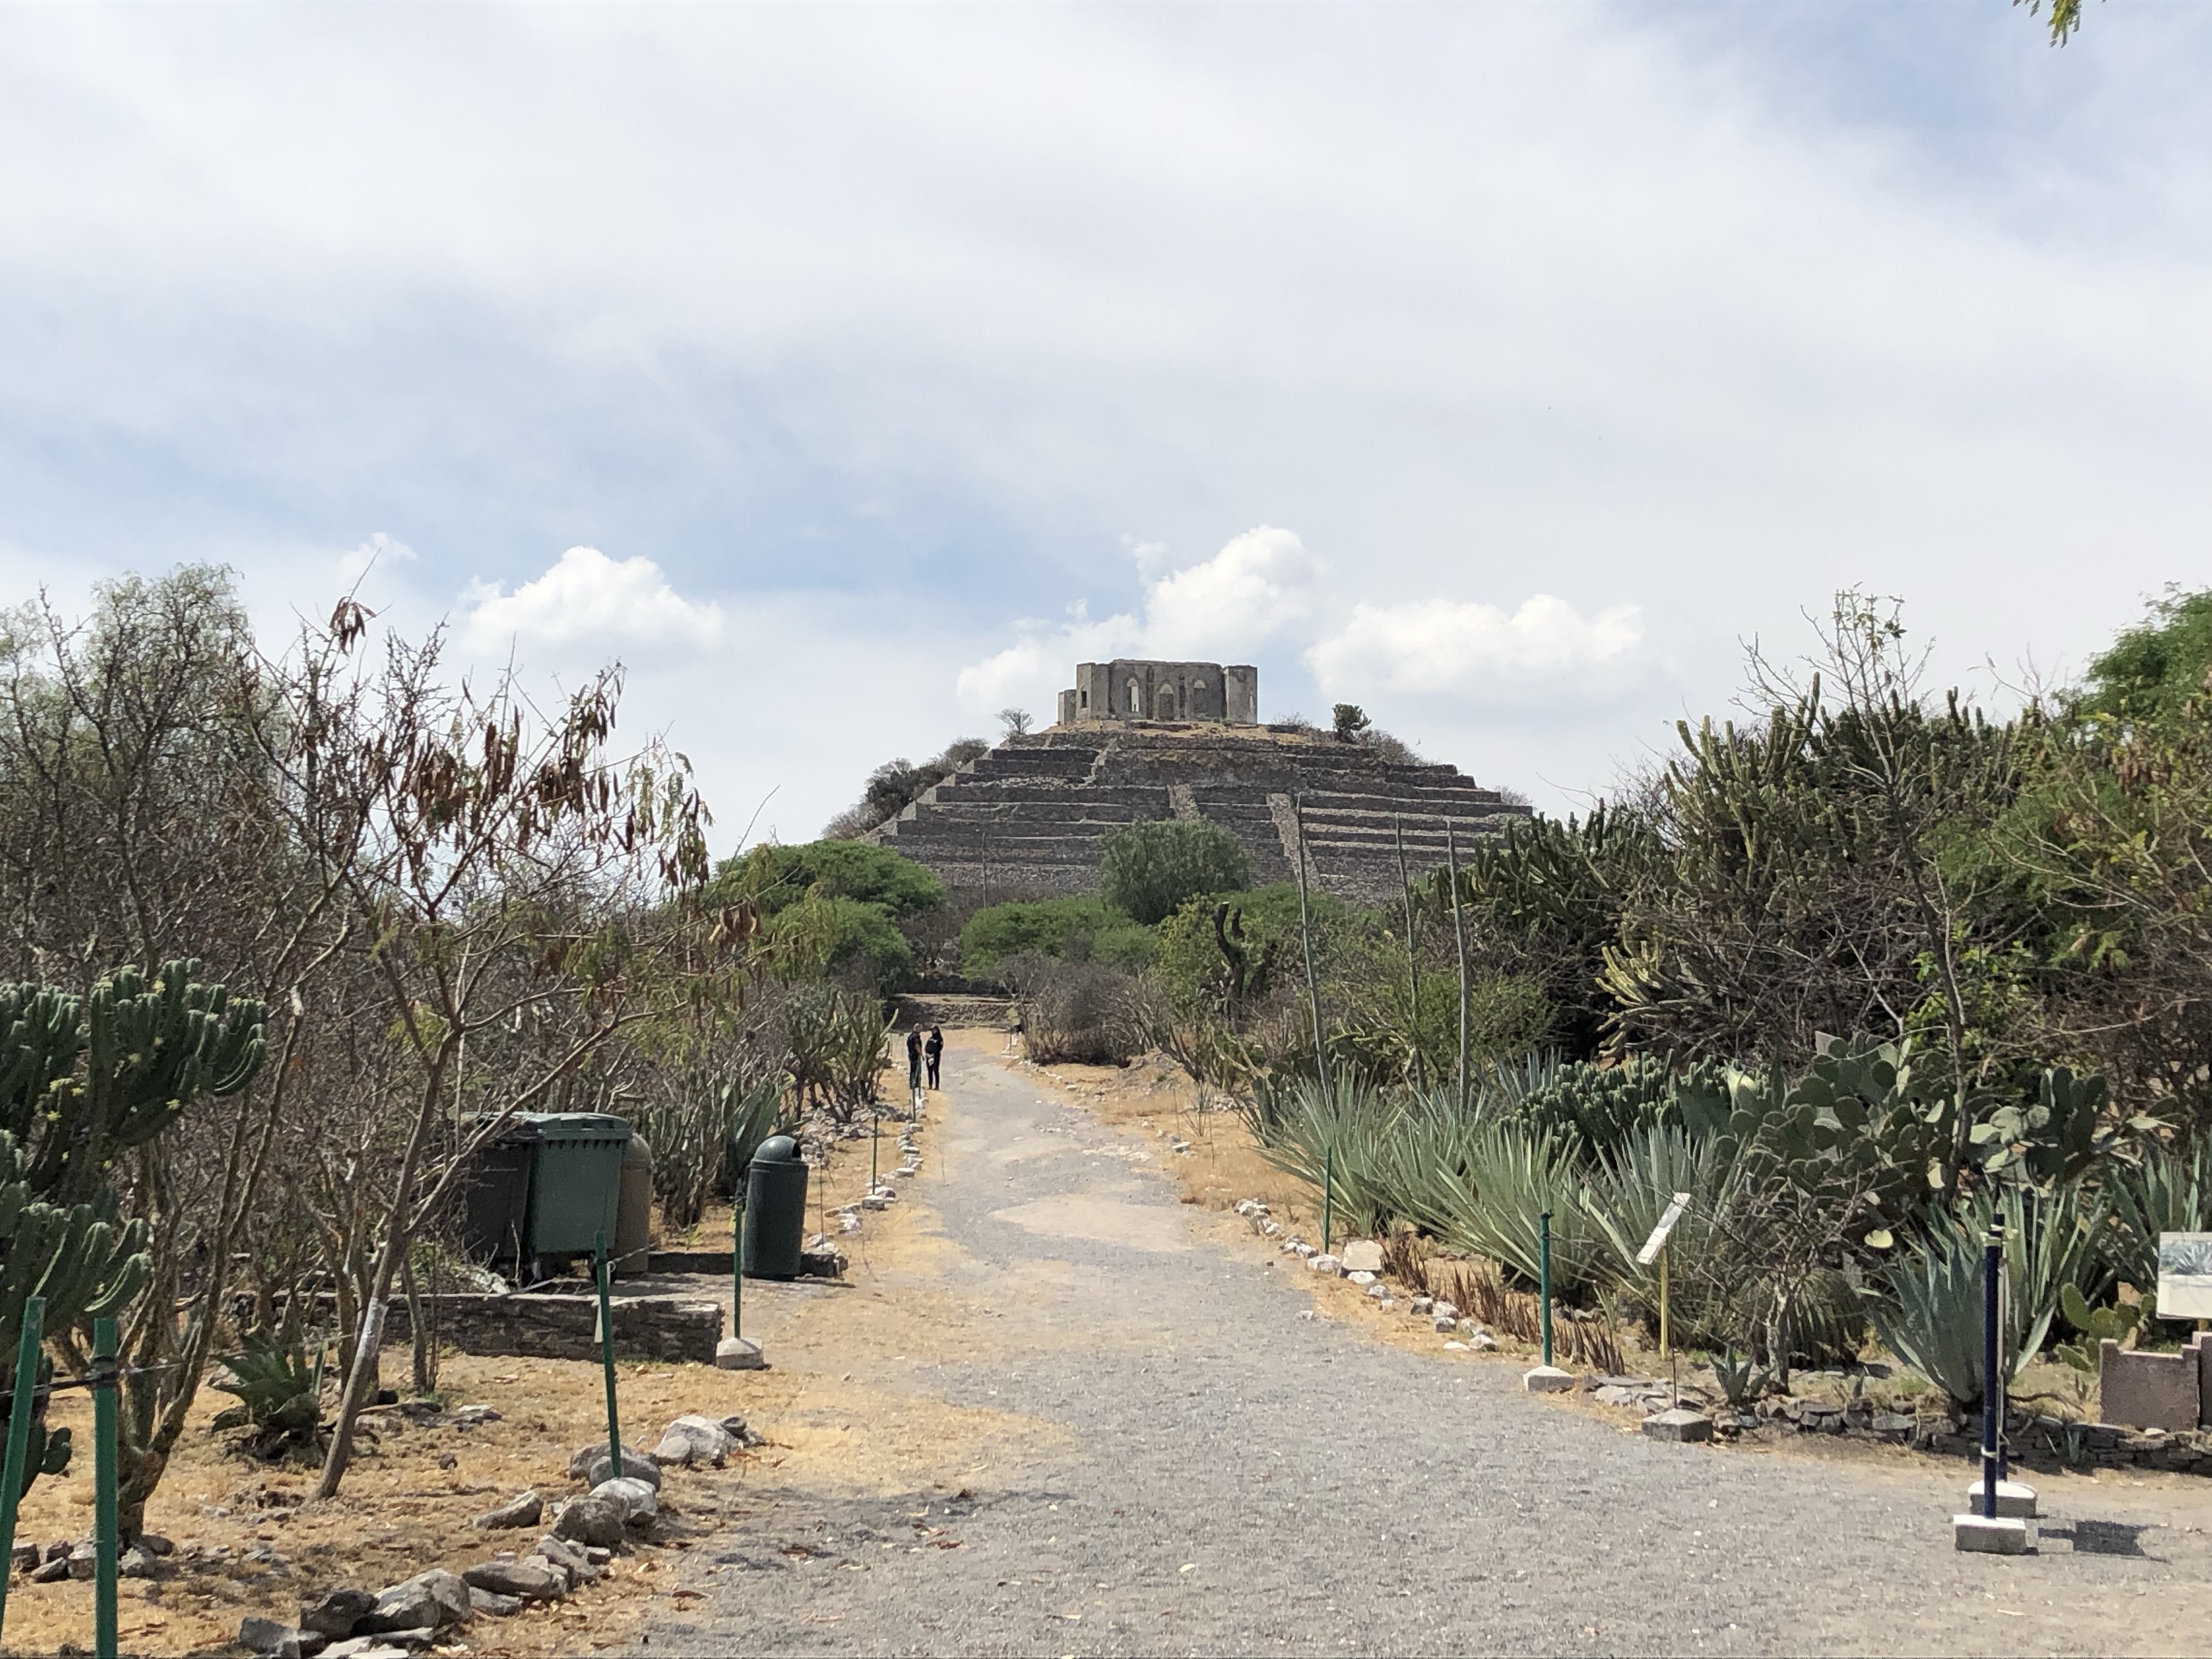  Zona arqueológica de El Cerrito y Museo Regional podrían reabrir el 22 de septiembre